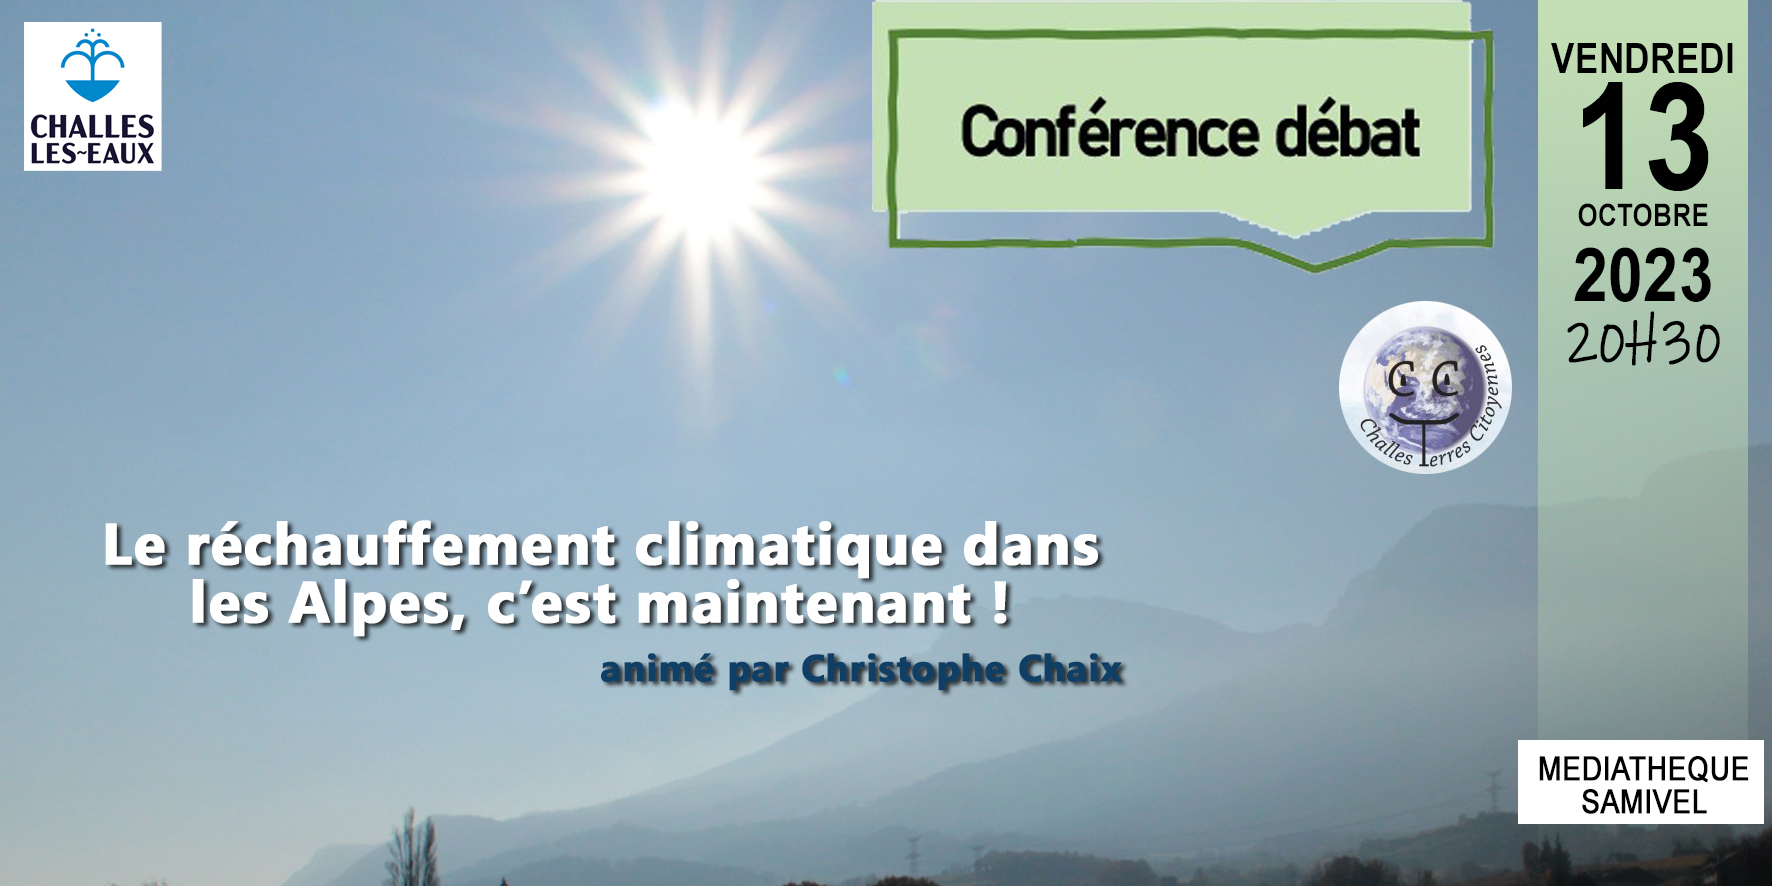 Conférence débat : évolution du climat dans les Alpes